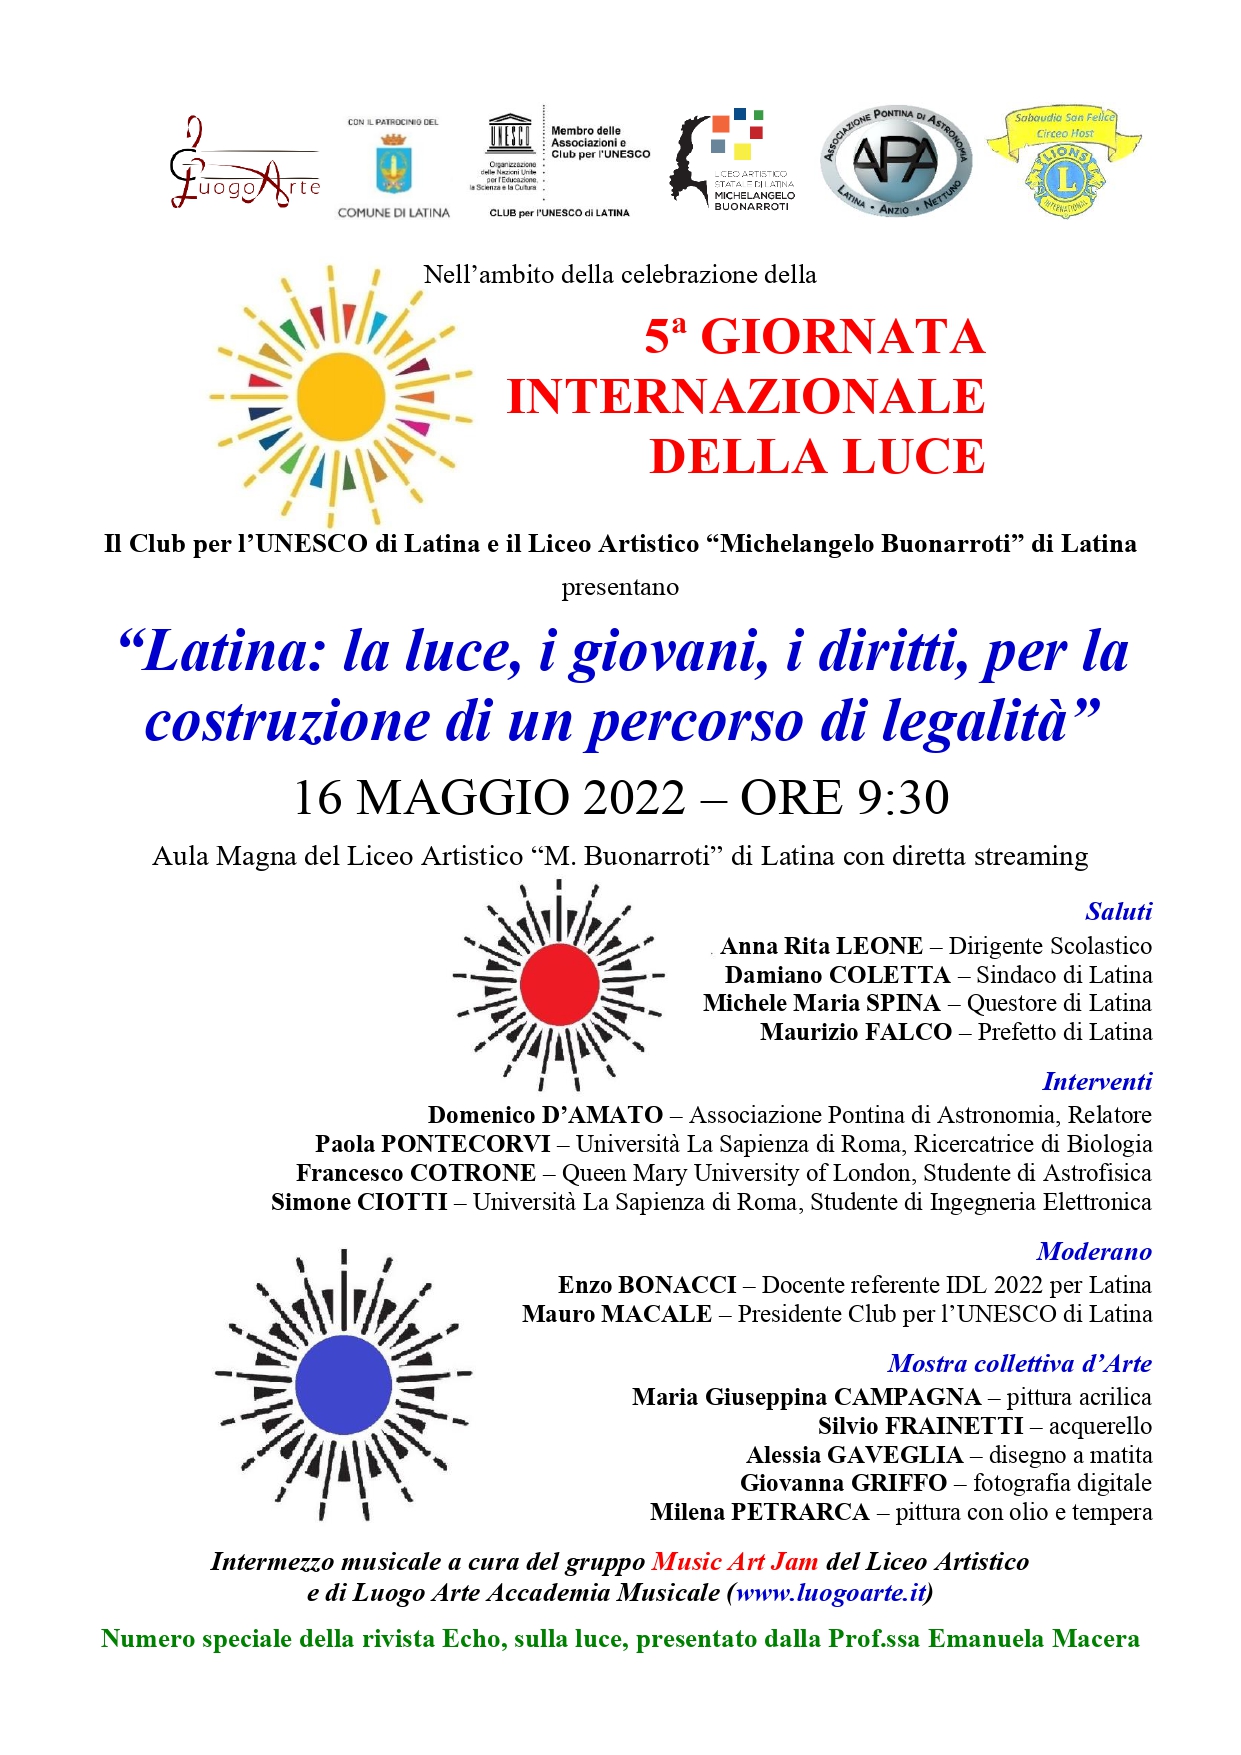 Il Club Unesco di Latina alla 5ᵃ Giornata Internazionale della Luce